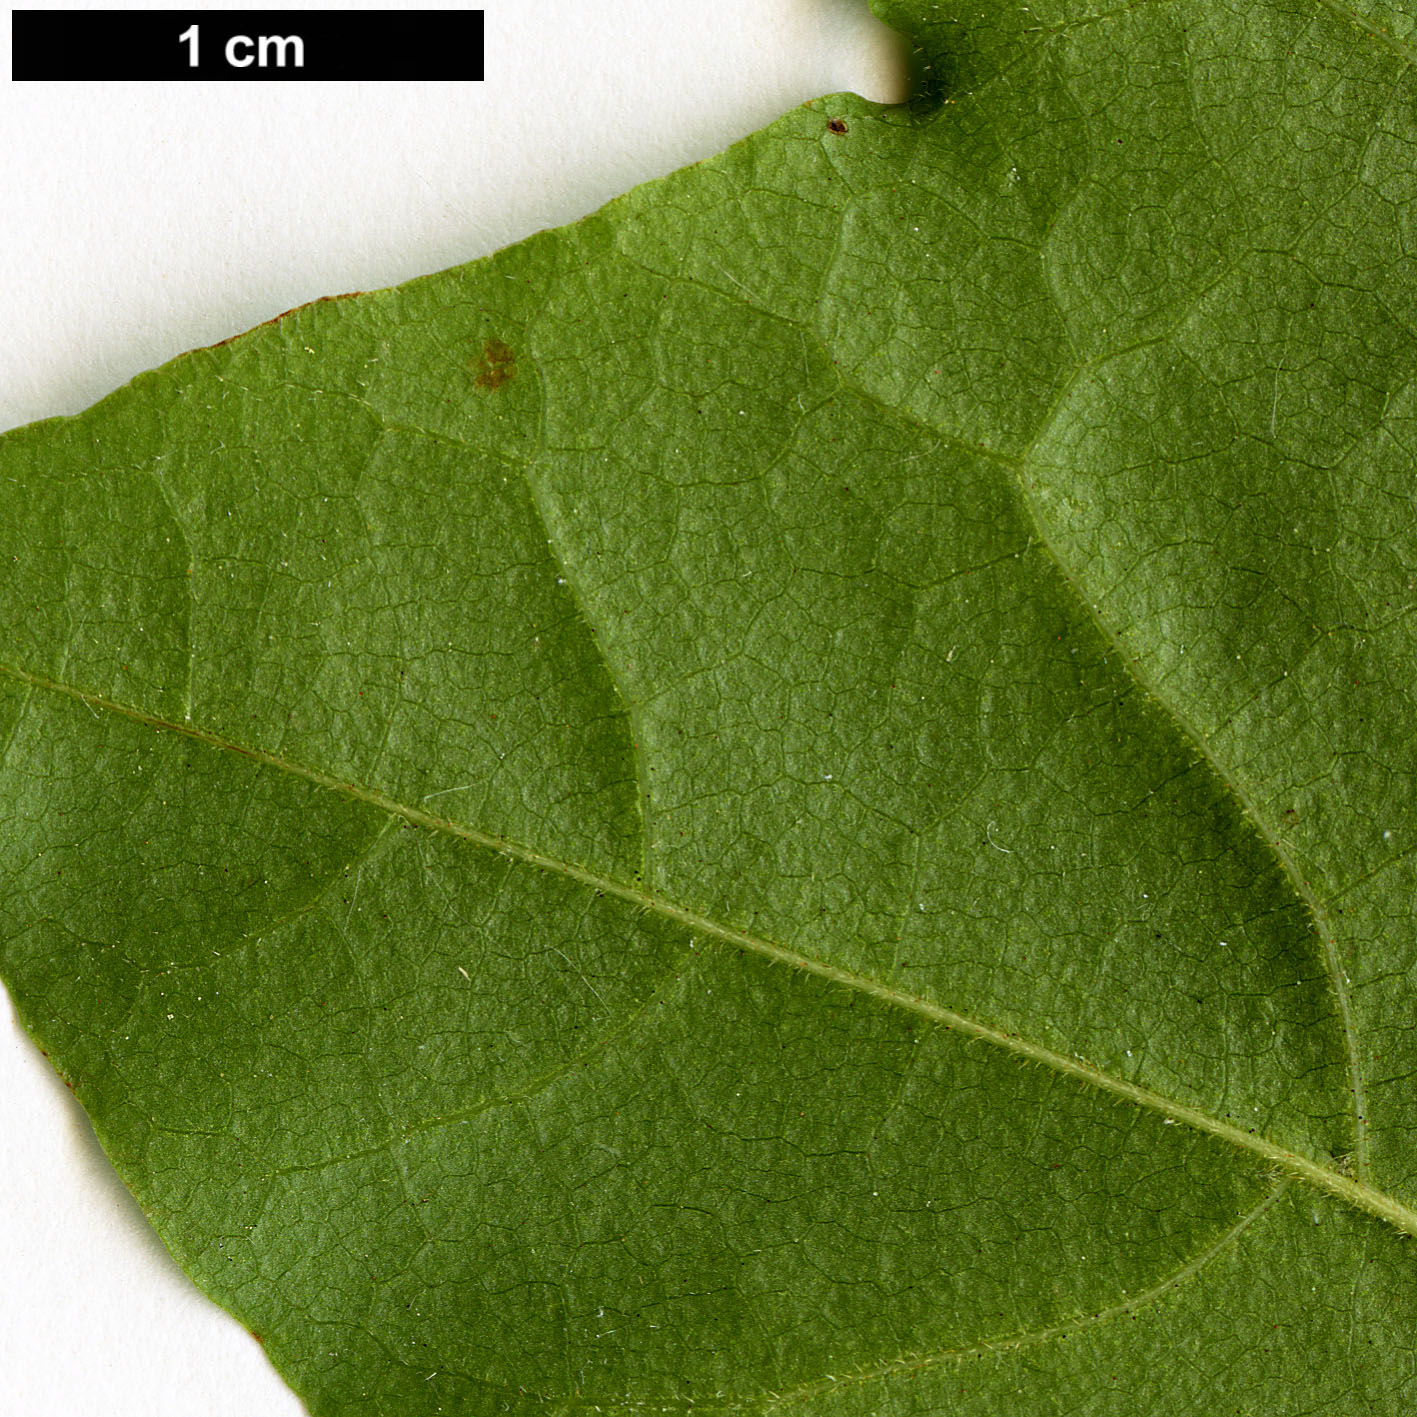 High resolution image: Family: Sapindaceae - Genus: Acer - Taxon: pictum - SpeciesSub: subsp. ambigum